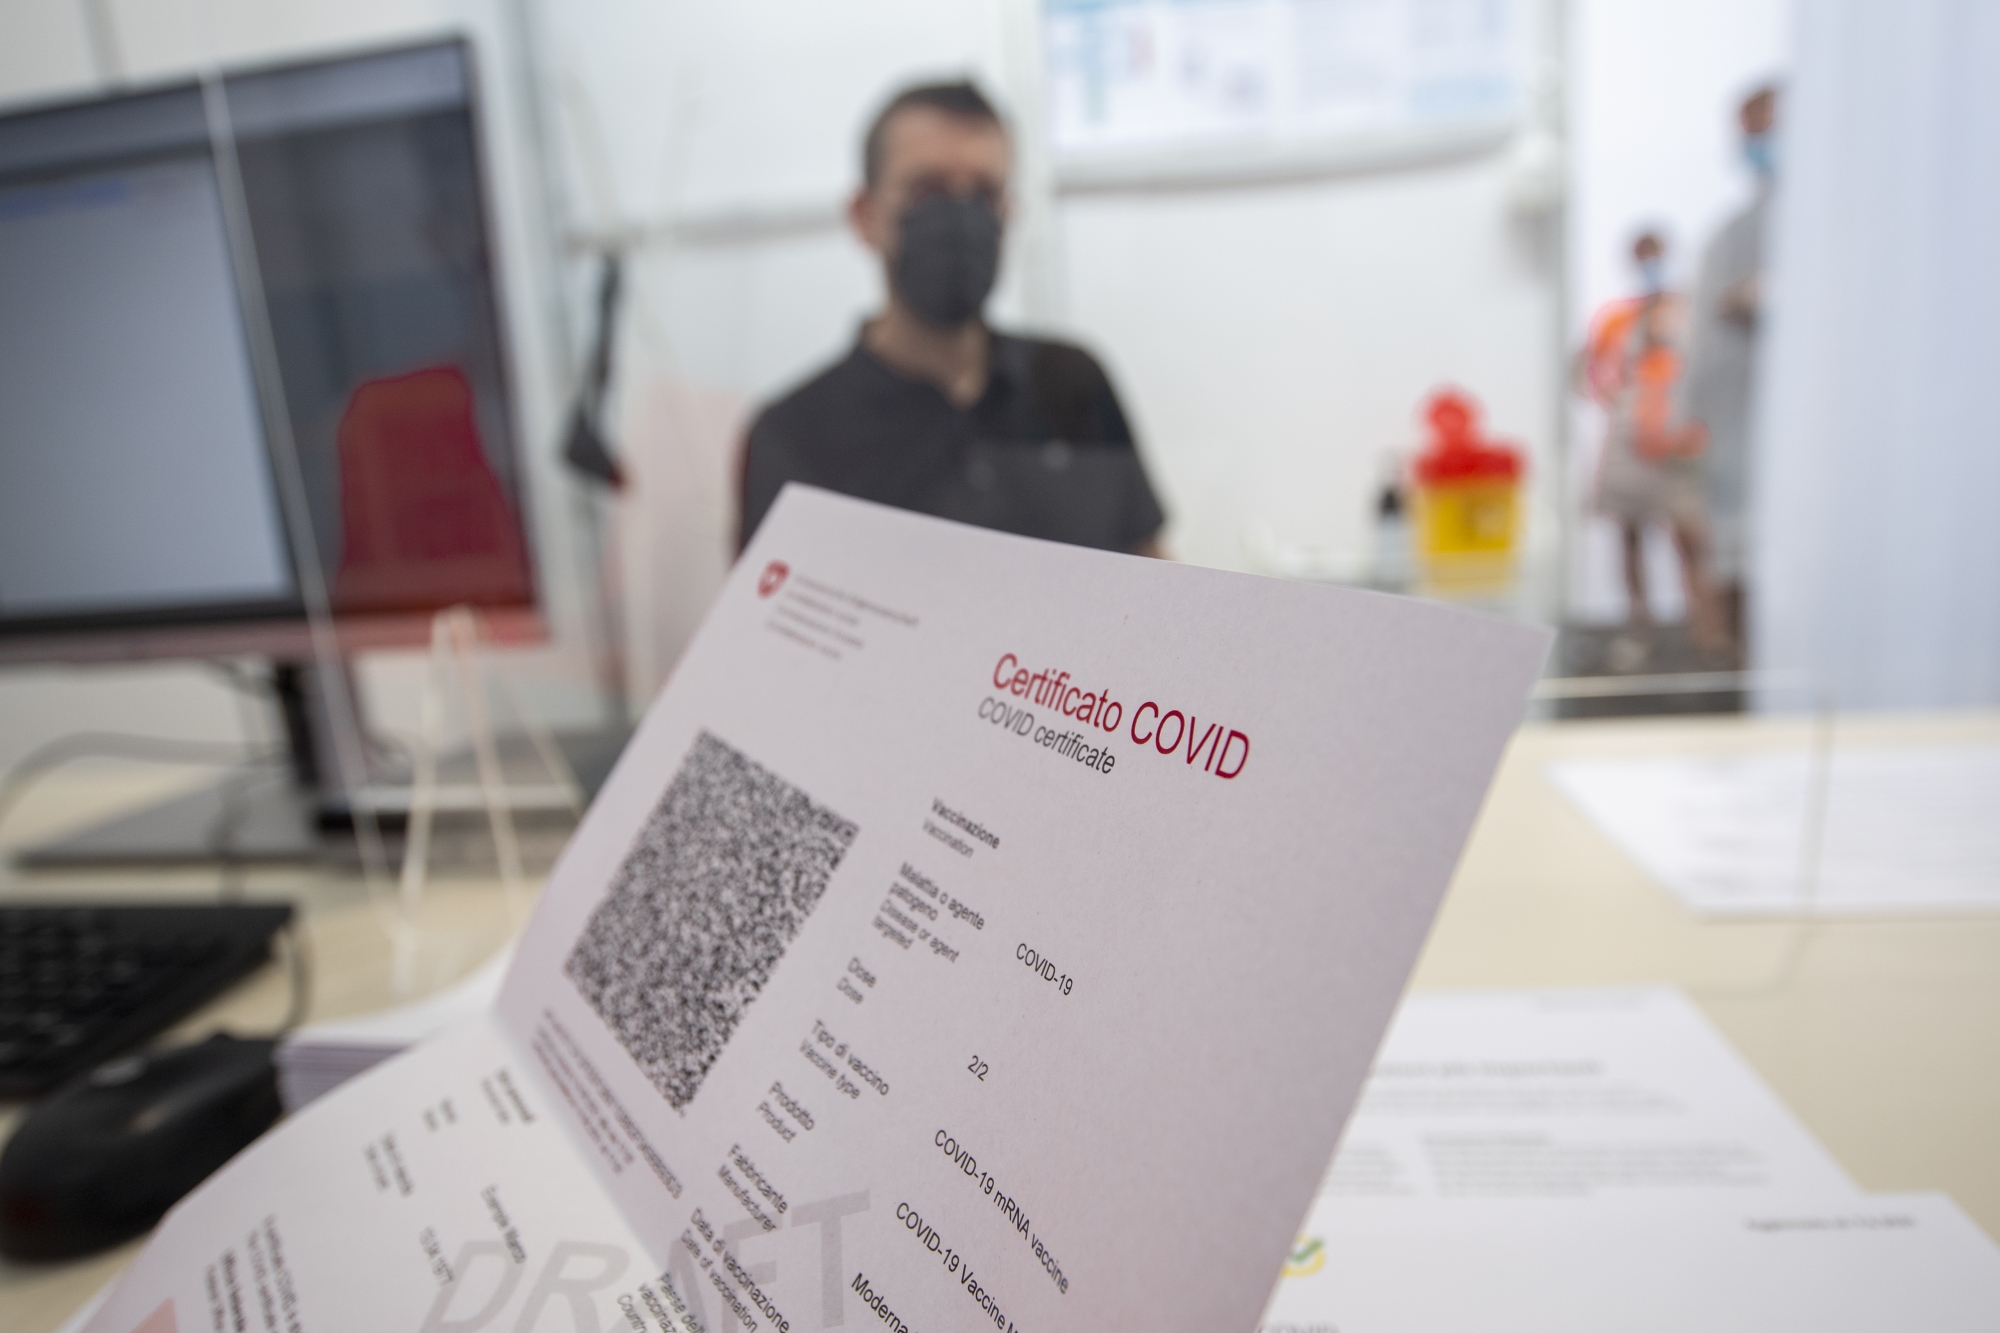 Ein Covid-Zertifikat Schweiz aufgenommen am Dienstag, 15. Juni 2021 in Giubiasco. Das Covid-Zertifikat enthaelt neben Name, Vorname, Geburtsdatum und einer Zertifikatsnummer auch die Angaben zur Covid-19-Impfung, zur Genesung oder zum negativen PCR-Test- bzw. Antigen-Schnelltest-Resultat. Der im Covid-Zertifikat angezeigte QR-Code soll das Zertifikat dank einer elektronischen Signatur der Schweizerischen Eidgenossenschaft faelschungssicher machen und die Echtheit des Covid-Zertifikats garantieren. (KEYSTONE/Ti-Press/Pablo Gianinazzi)